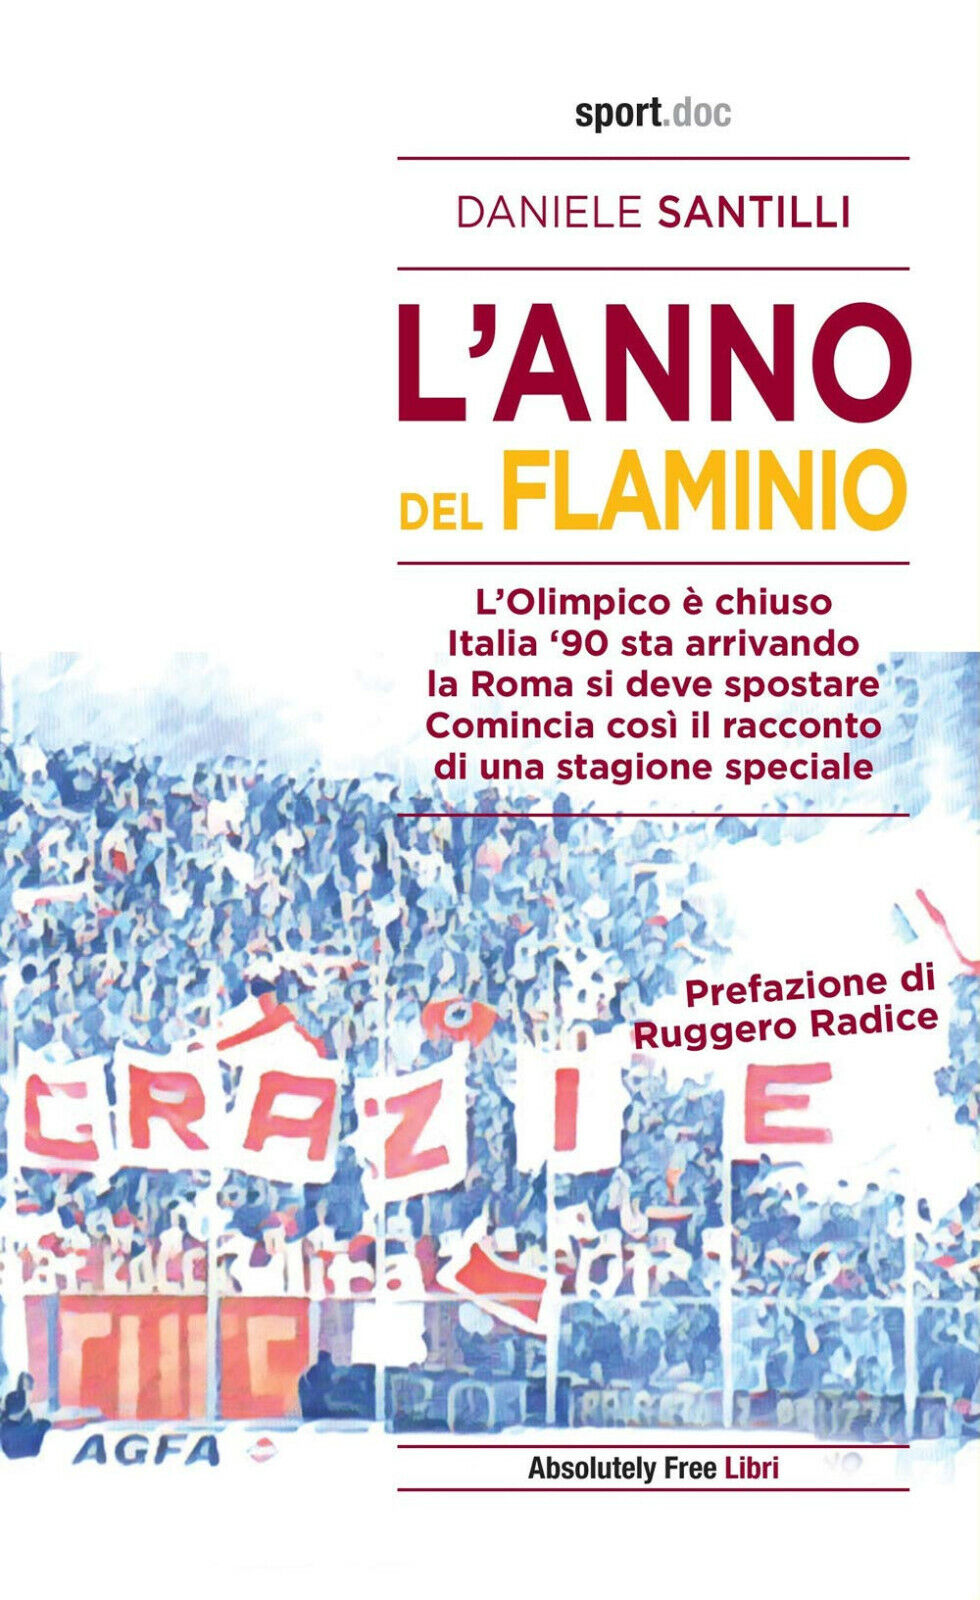 L'anno del Flaminio - Daniele Santilli - Absolutely Free, 2020